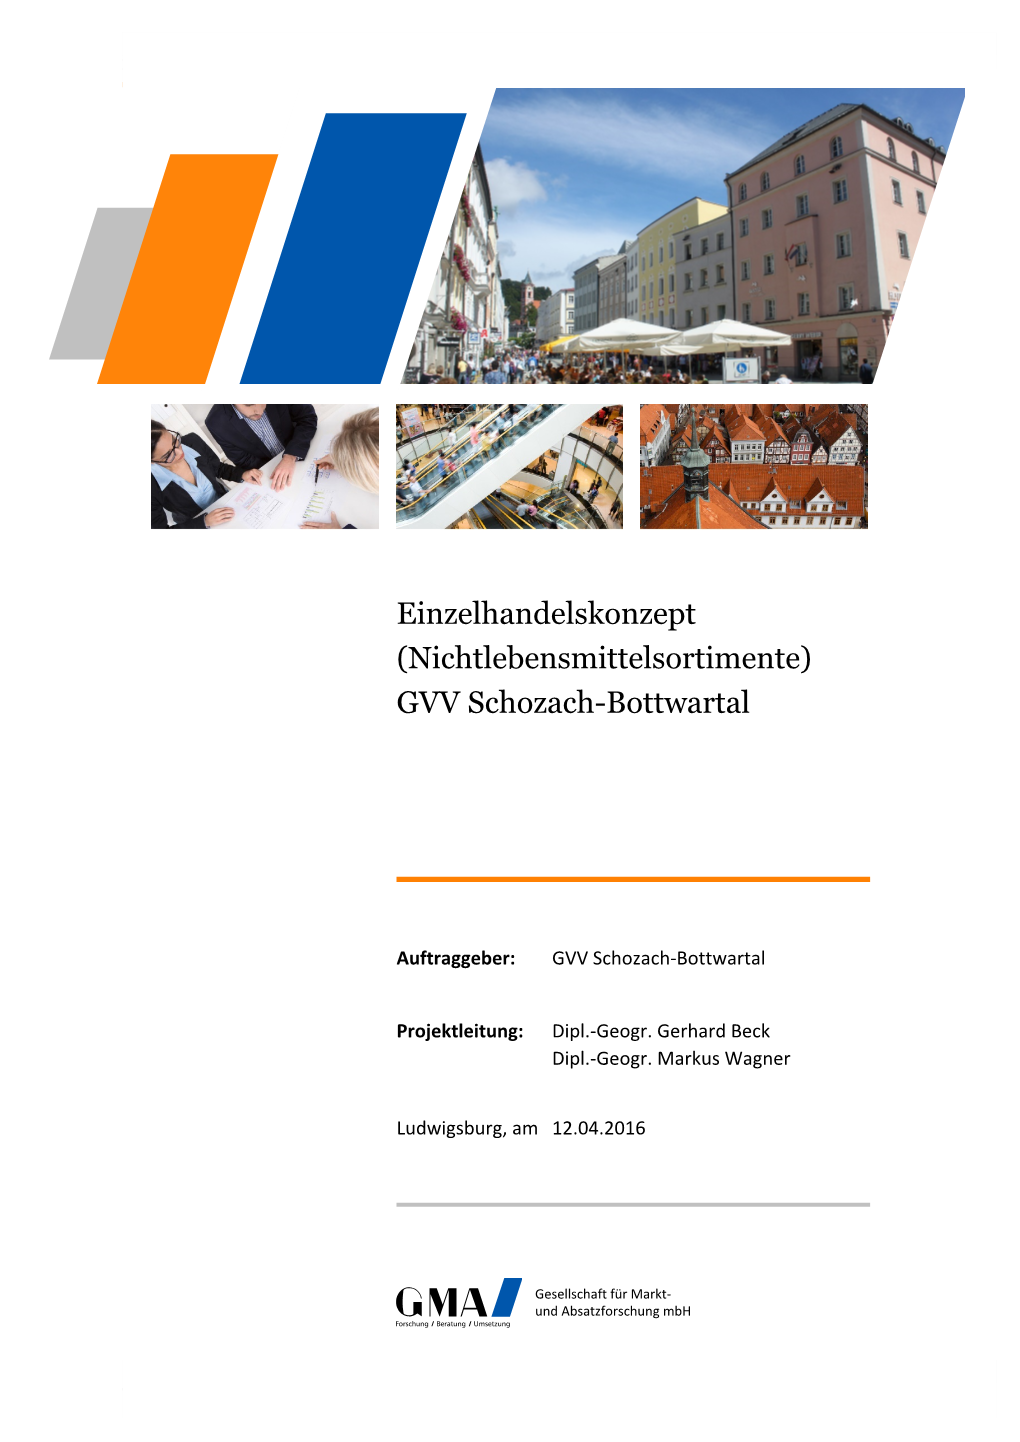 GVV Schozach-Bottwartal